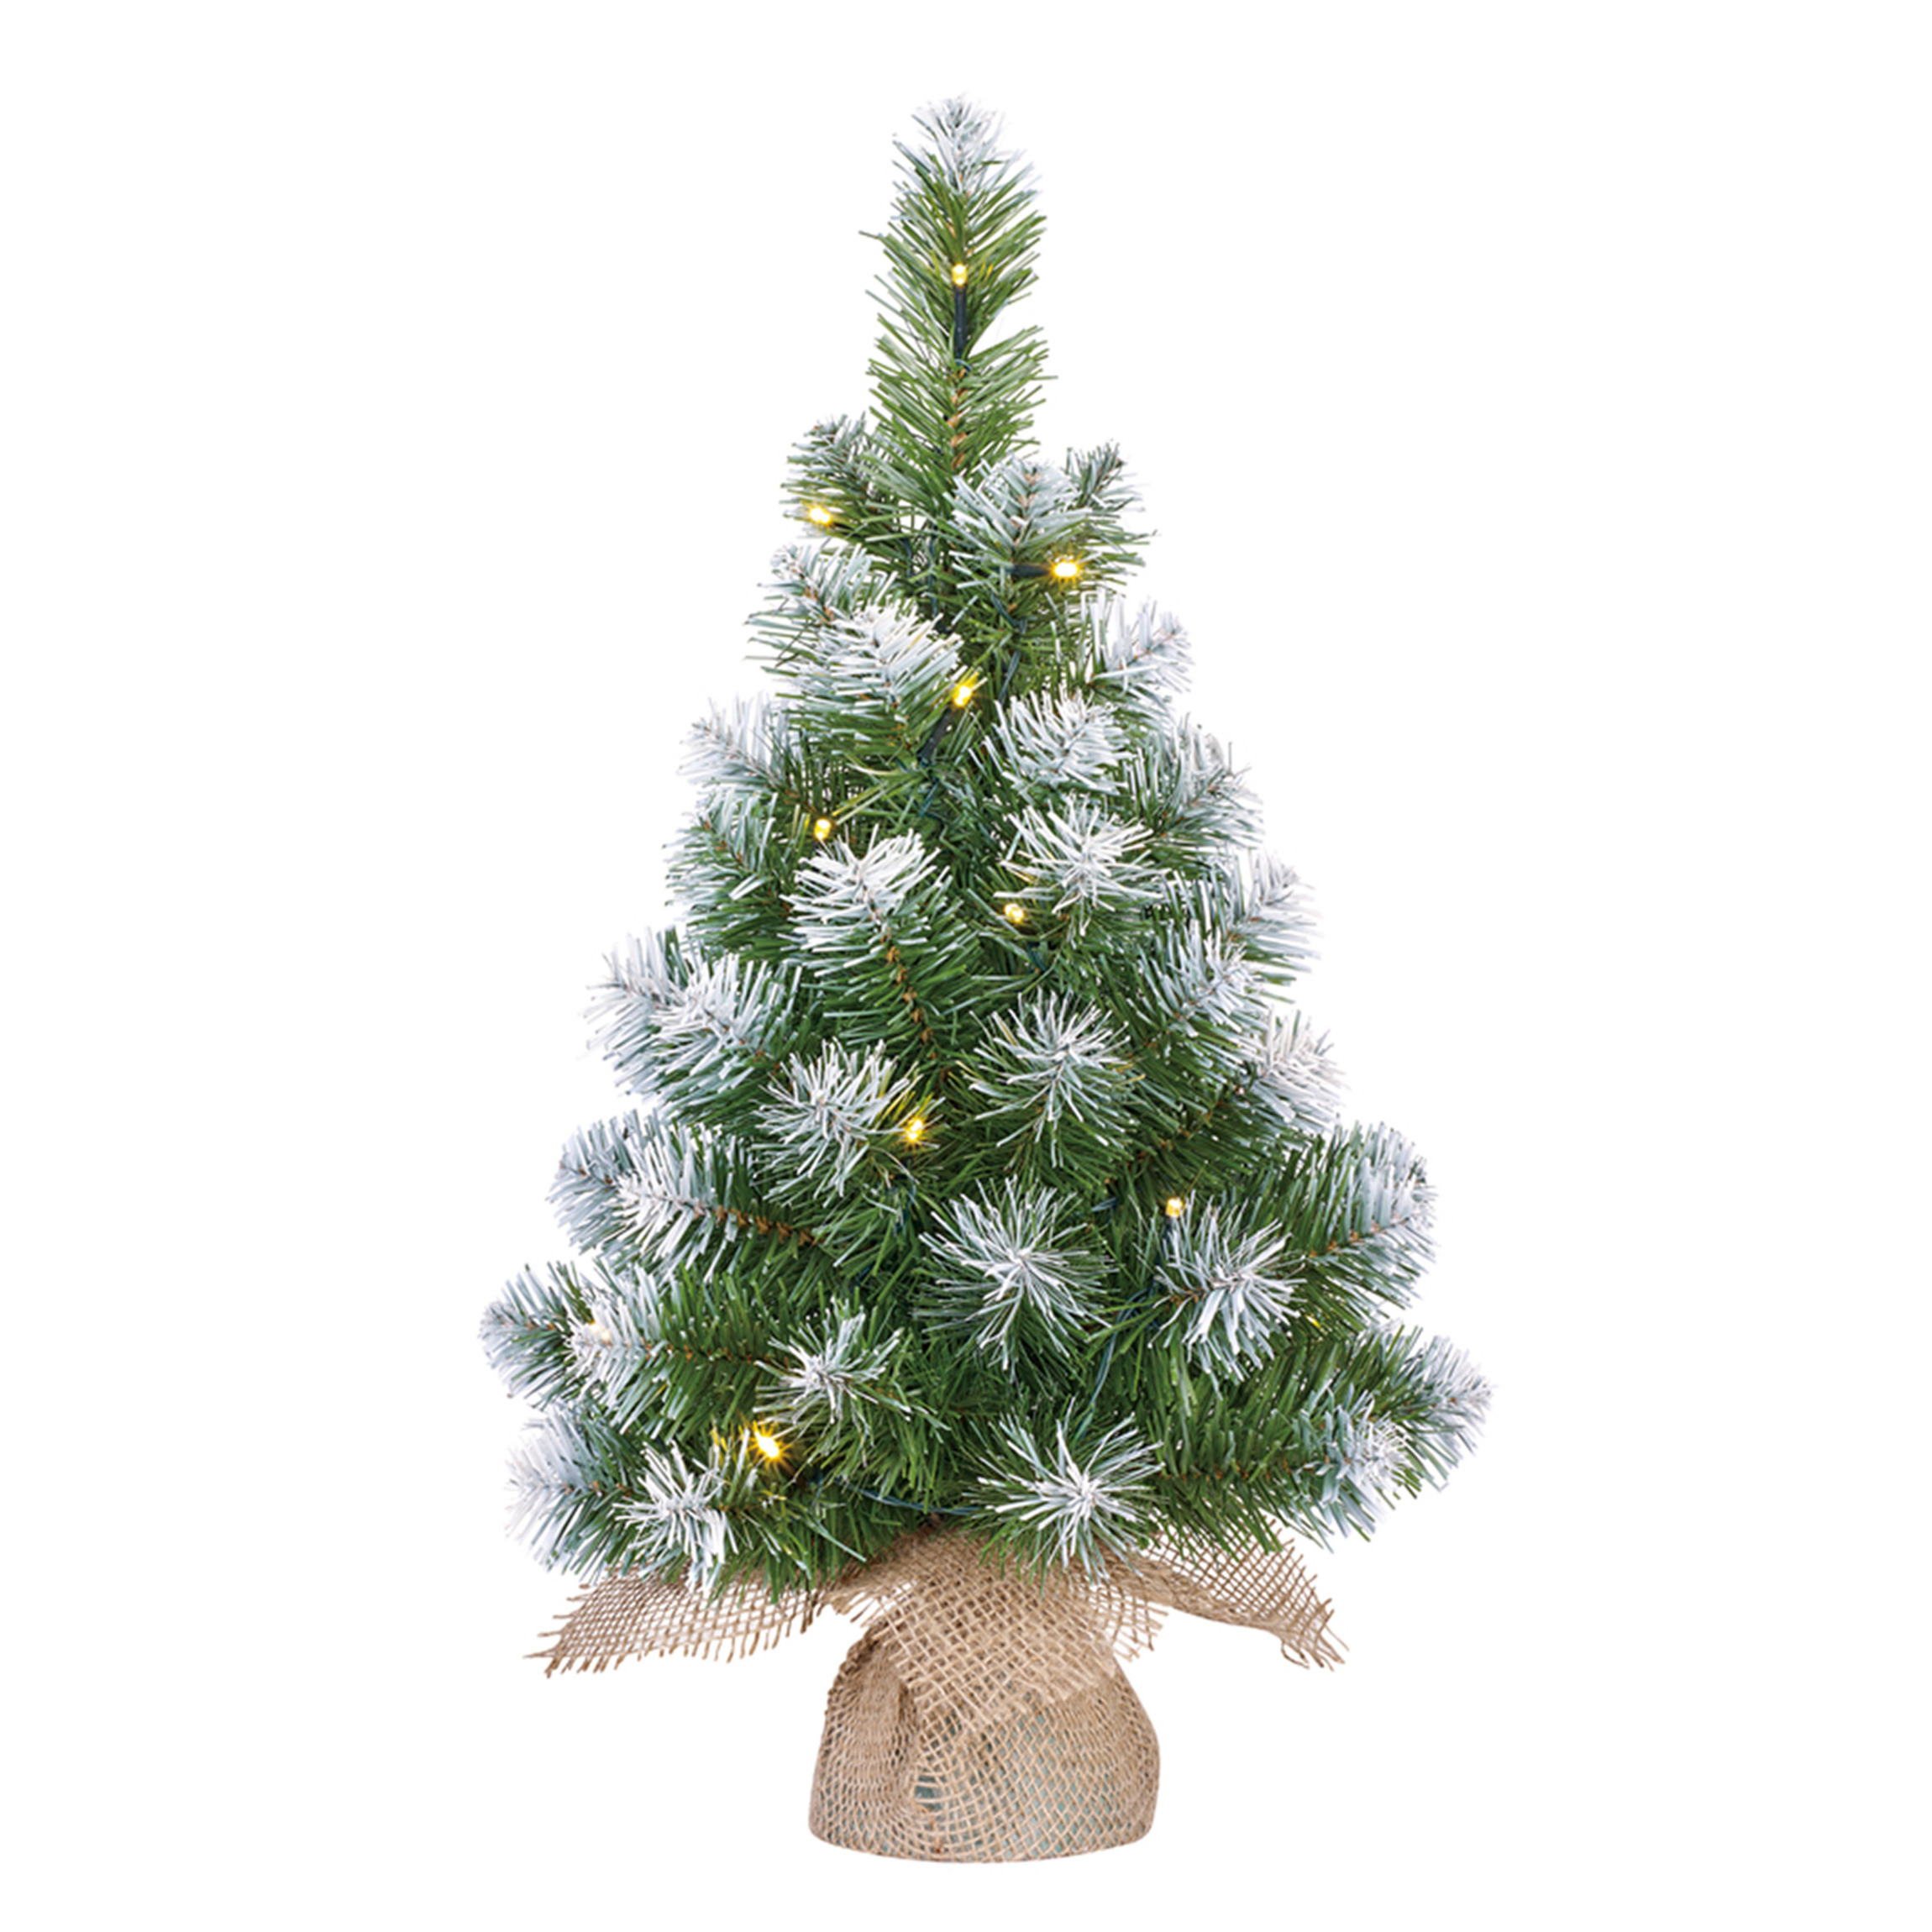 Kunst kerstboom-kunstboom in jute zak met verlichting en sneeuw 60 cm